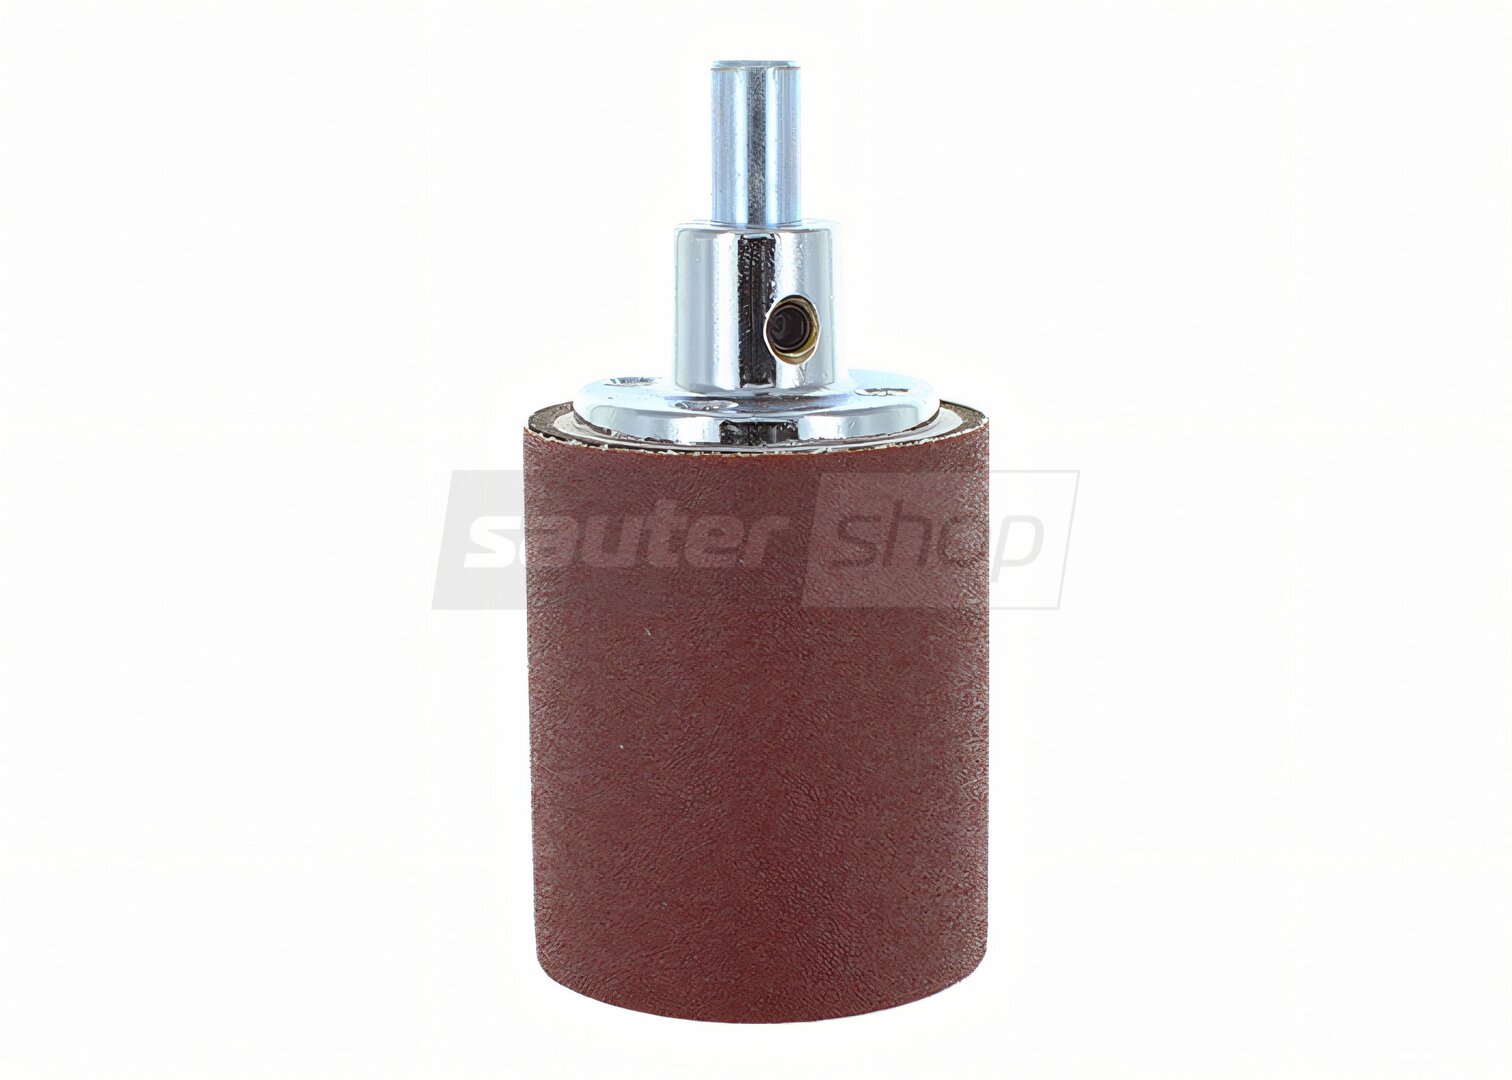 Cylindre de ponçage maison pour perceuse colonne (DIY : Homemade sanding  cylinder for drill press) – L'Atelier Bricolage d'un Compagnon du Bois